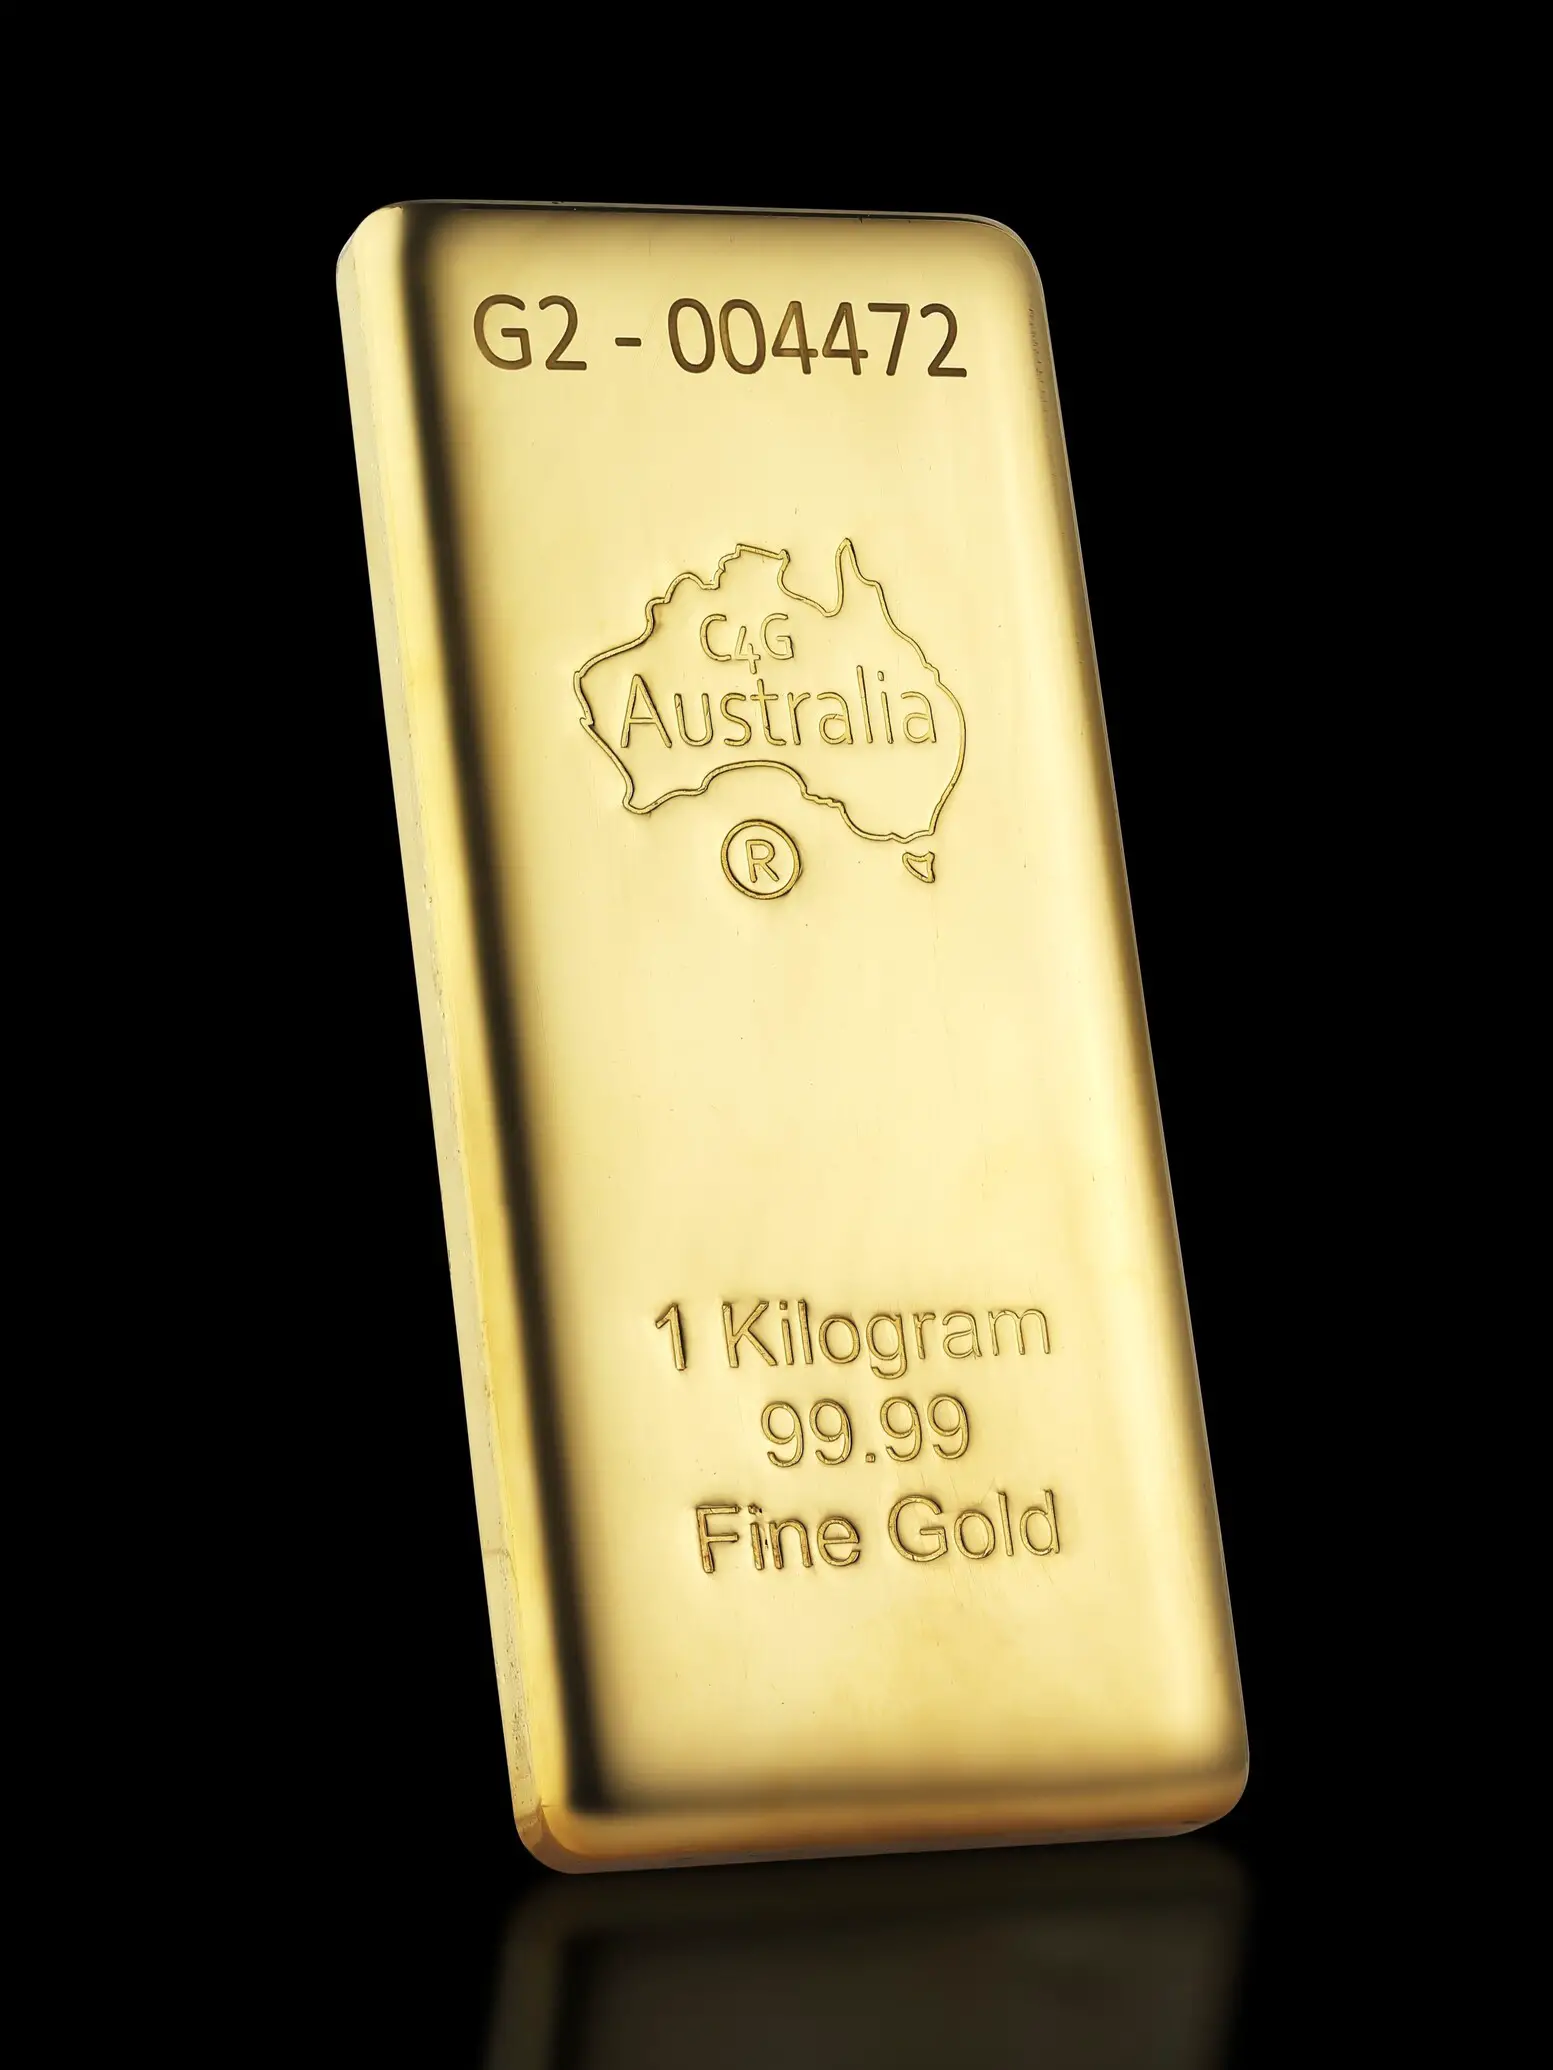 1 kg C4G Cast Gold Bullion 99.99% Pure